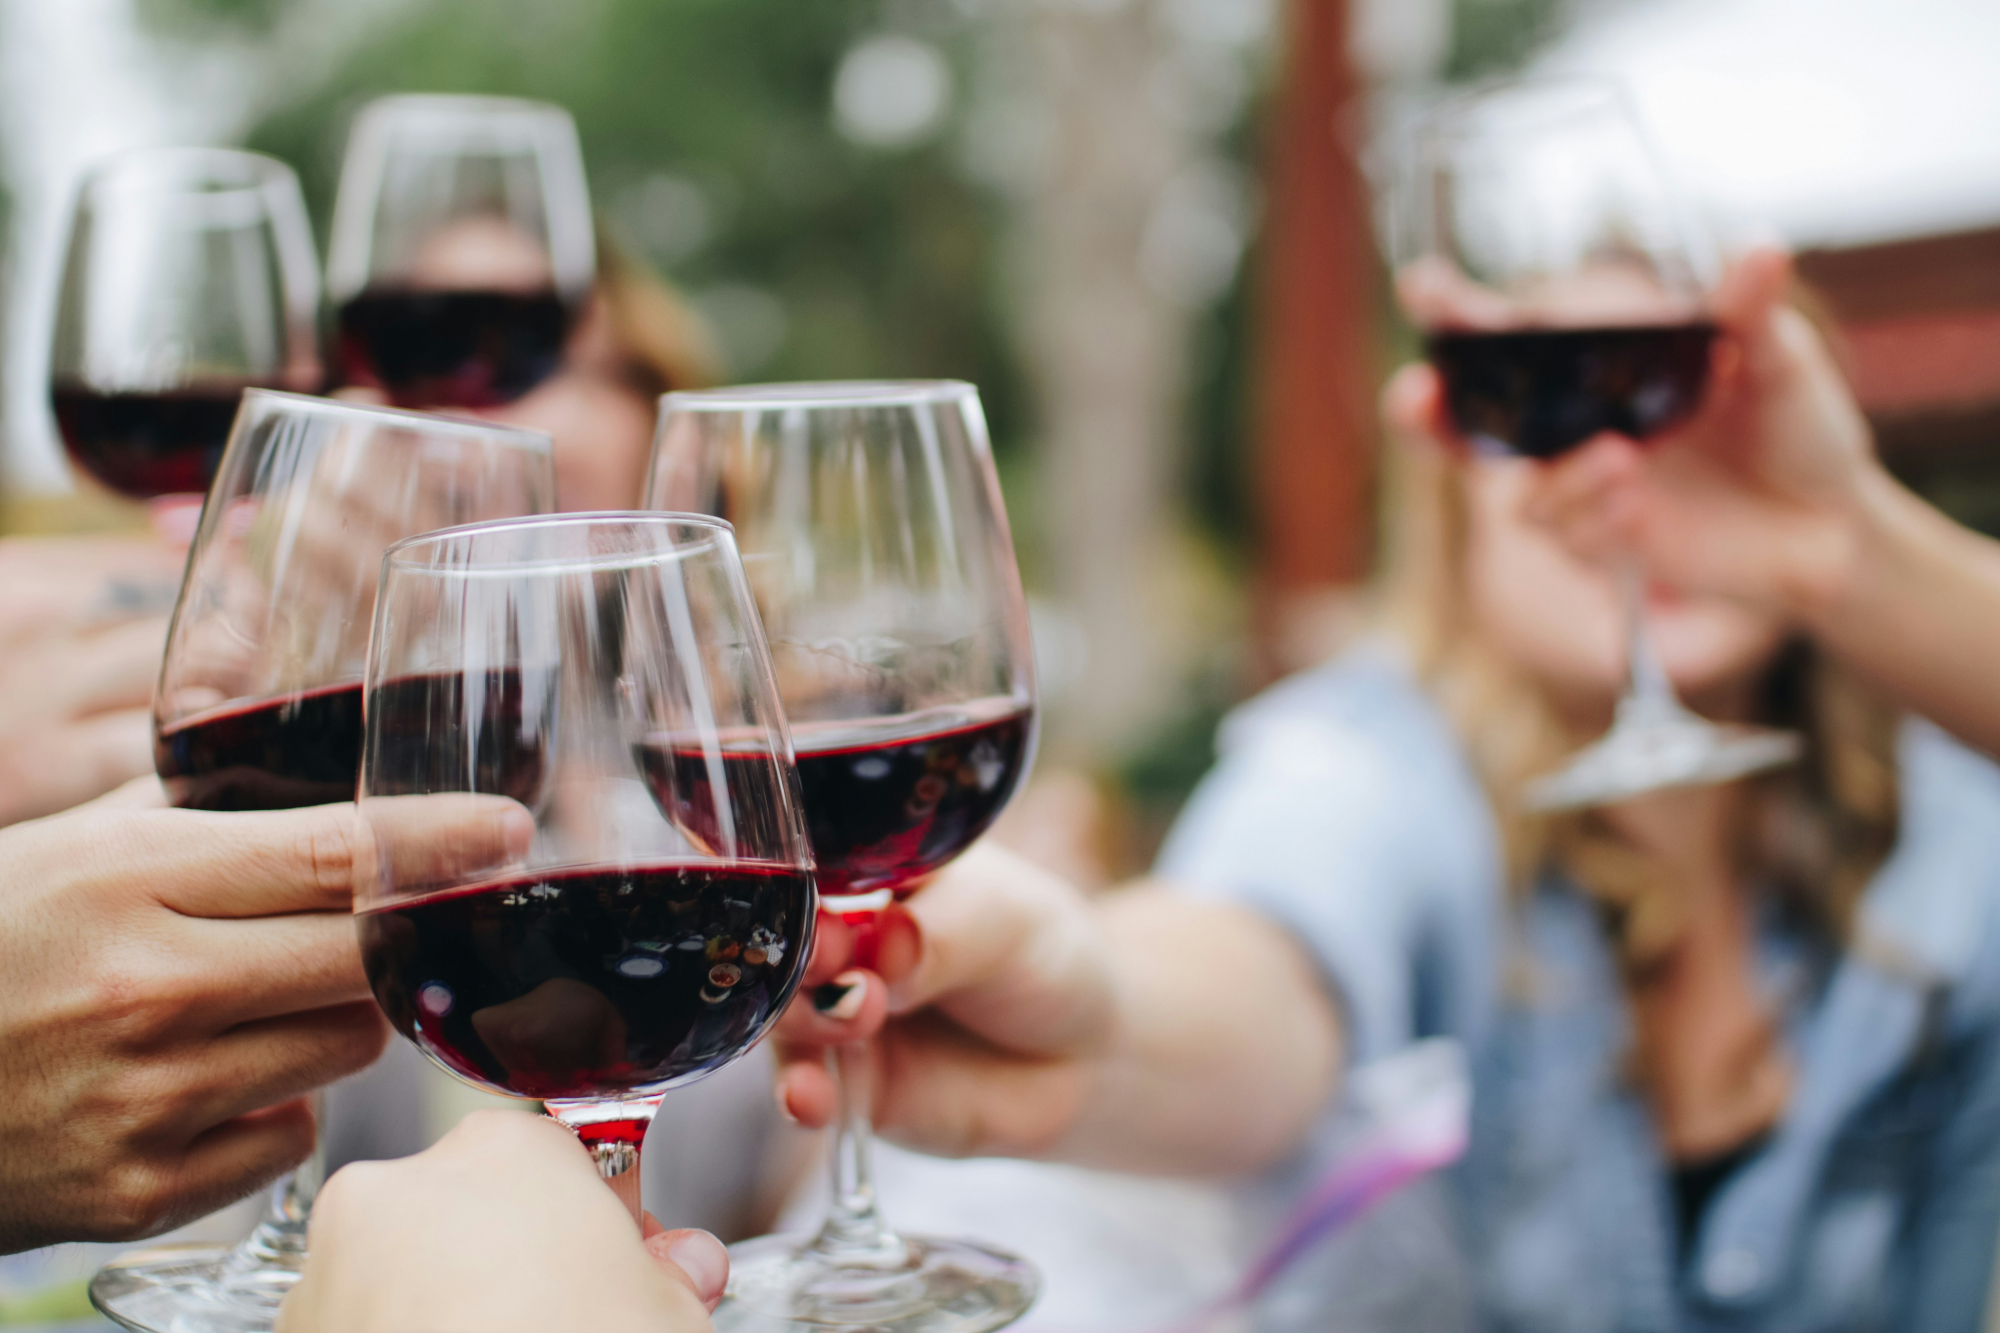 découvrez les meilleures associations pour accompagner vos vins avec les plats, grâce à nos conseils de pairings de vins.